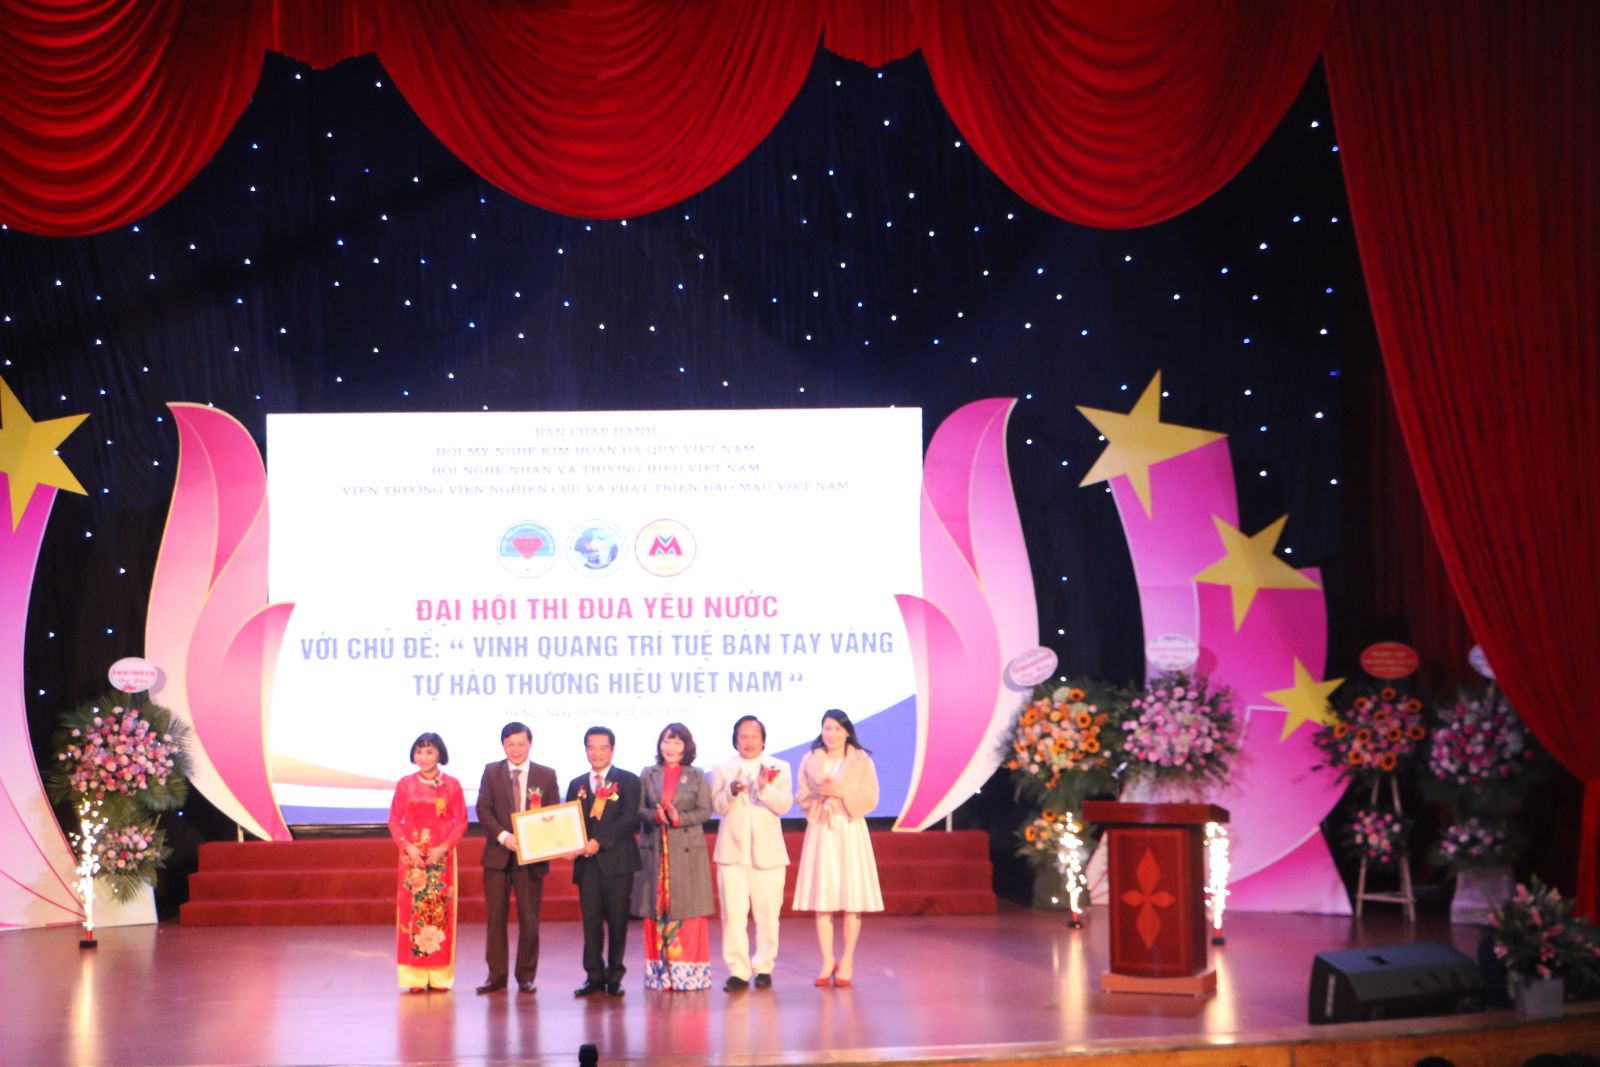 Đại hội thi đua yêu nước với chủ đề Vinh quang trí tuệ Bàn tay vàng-Tự hào thương hiệu Việt Nam thành công tốt đẹp